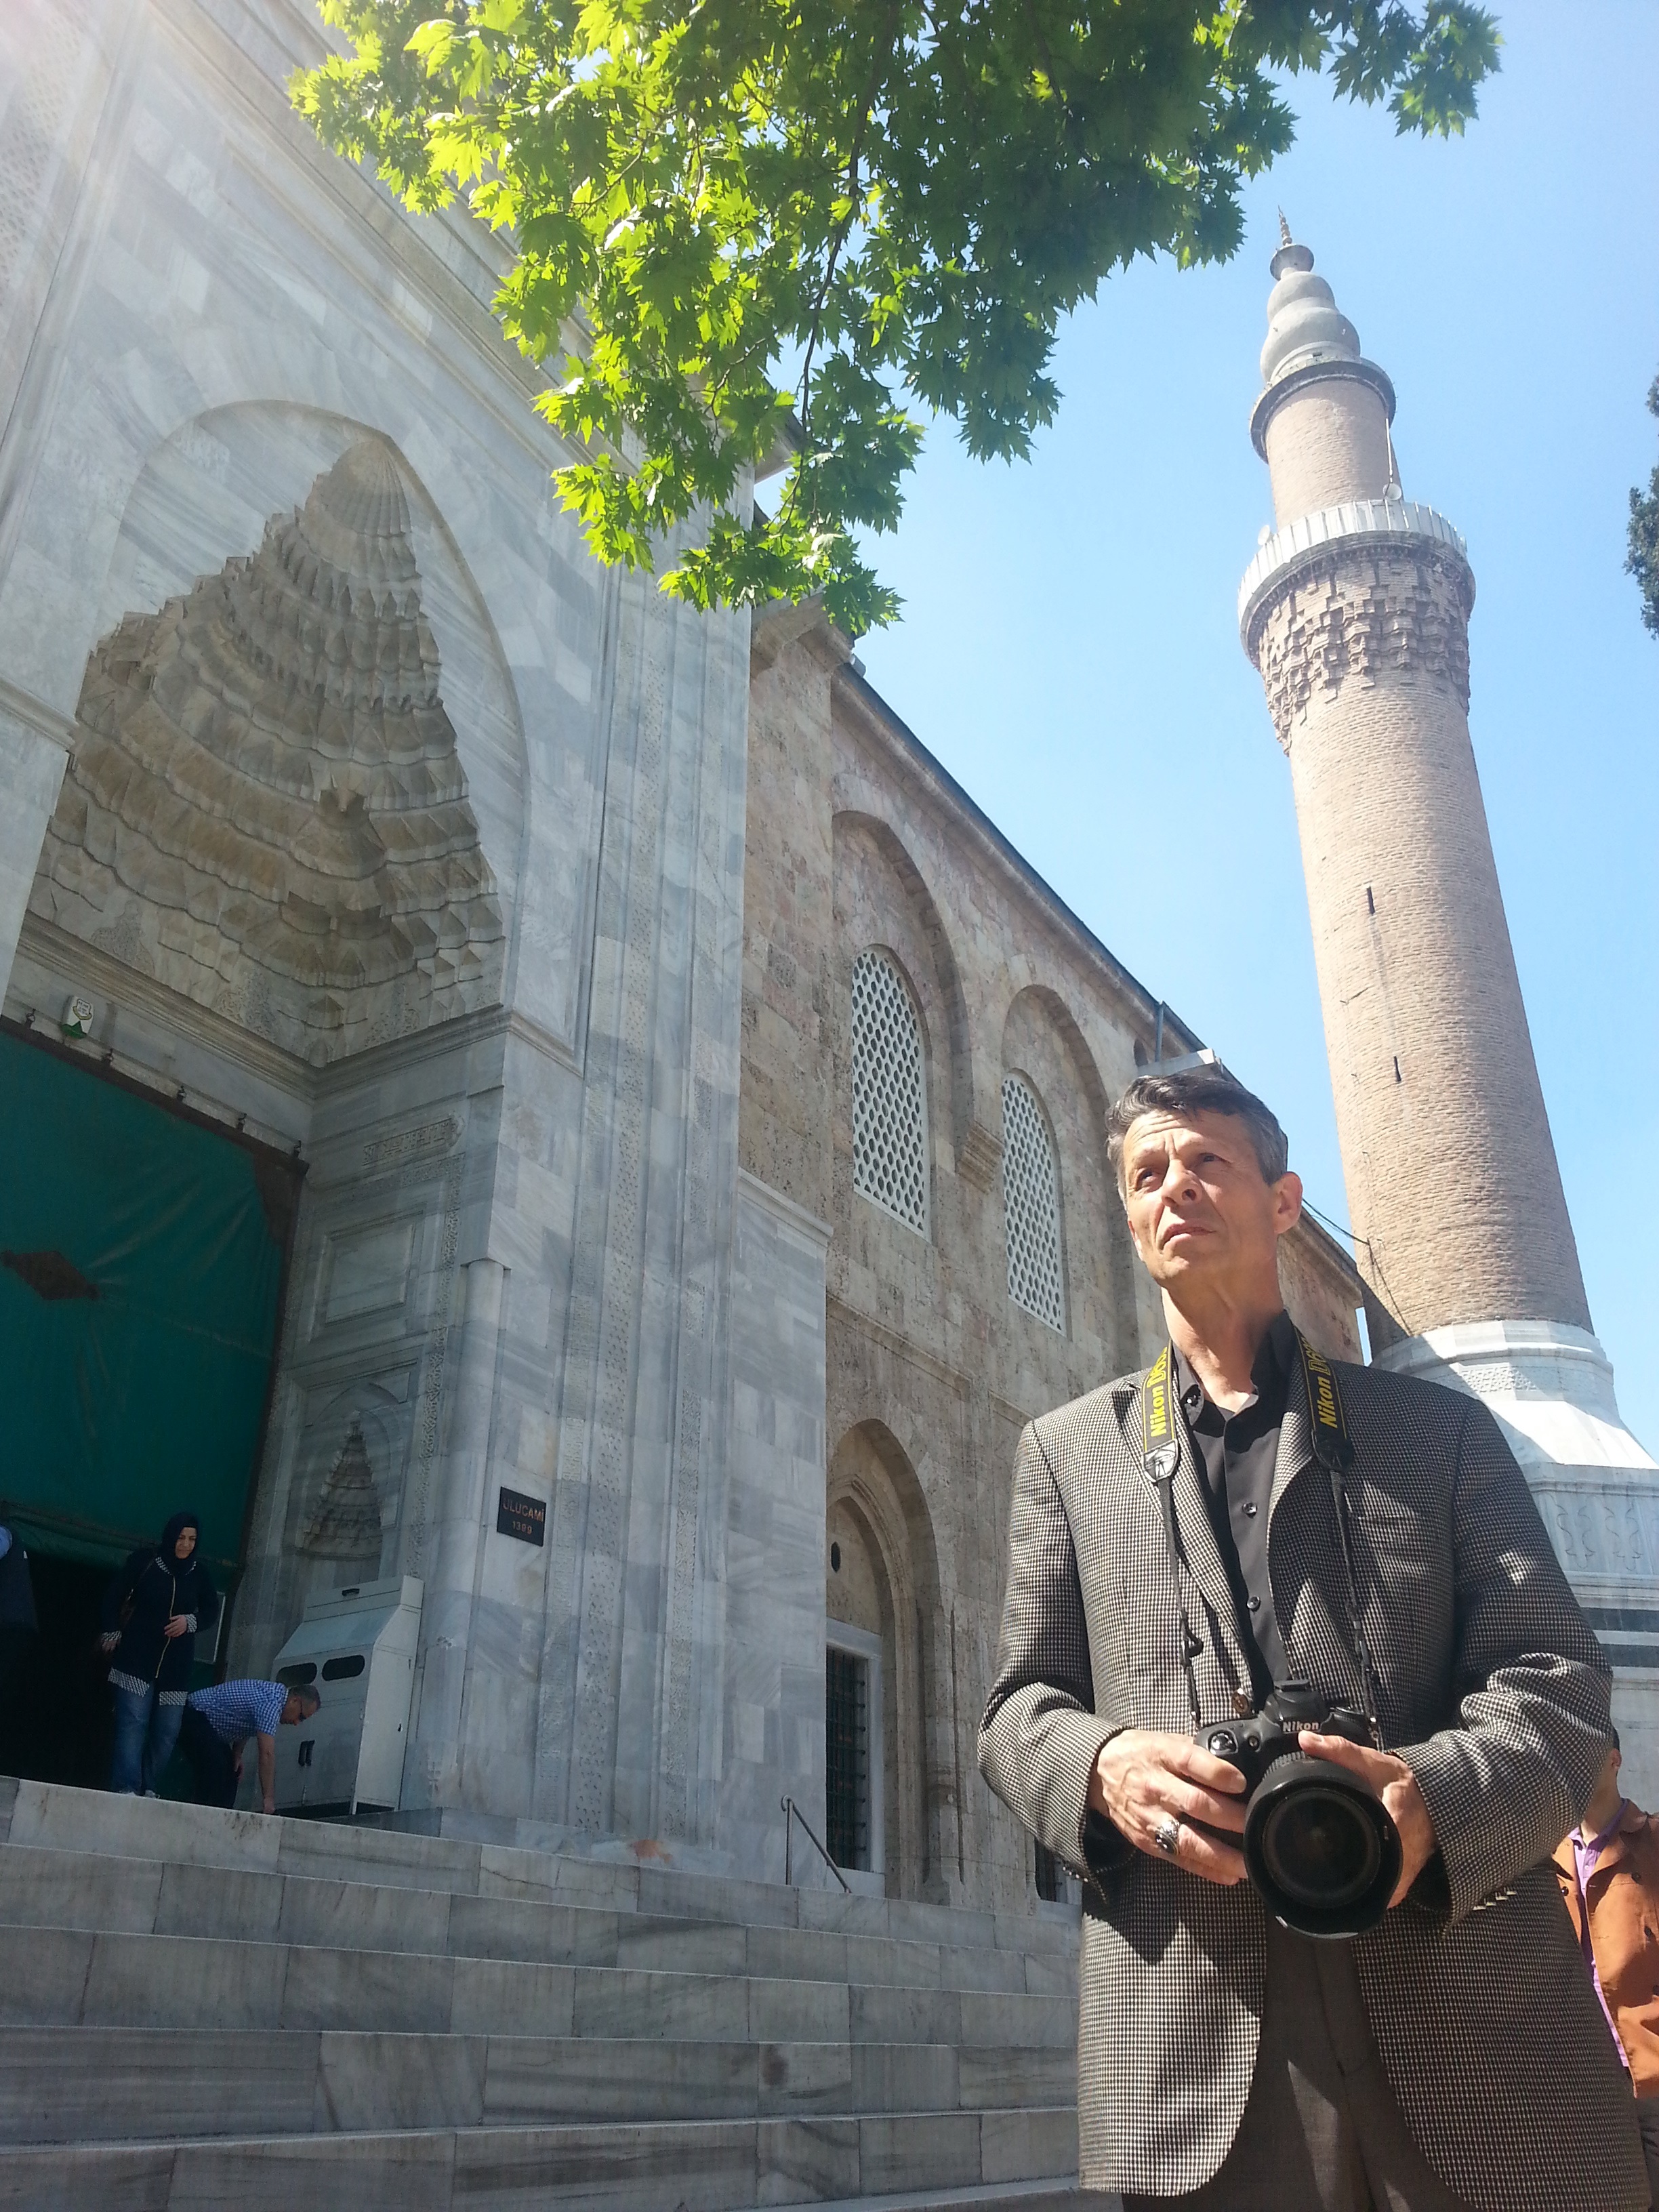 Мустафа Джамбаз был единственным, кто сфотографировал все великие мечети Турции для Представительства Культурного центра 
им. Ататюрка.